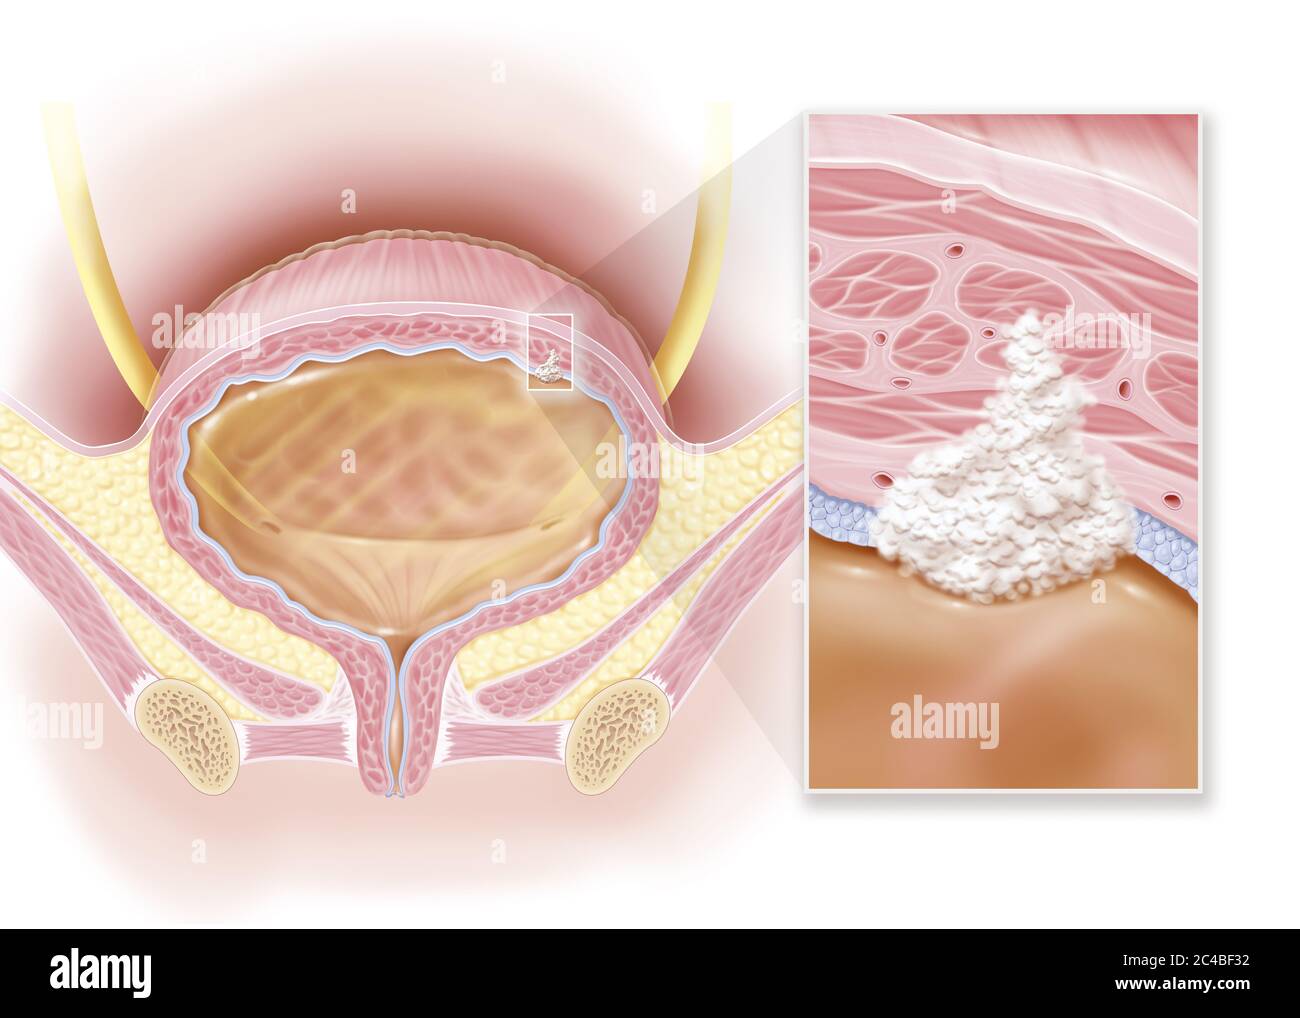 Cáncer de vejiga invasivo, estadio II, daño muscular. Esta ilustración muestra la vejiga de una mujer con un tumor canceroso invasivo en estadio II en la parte superior derecha Foto de stock